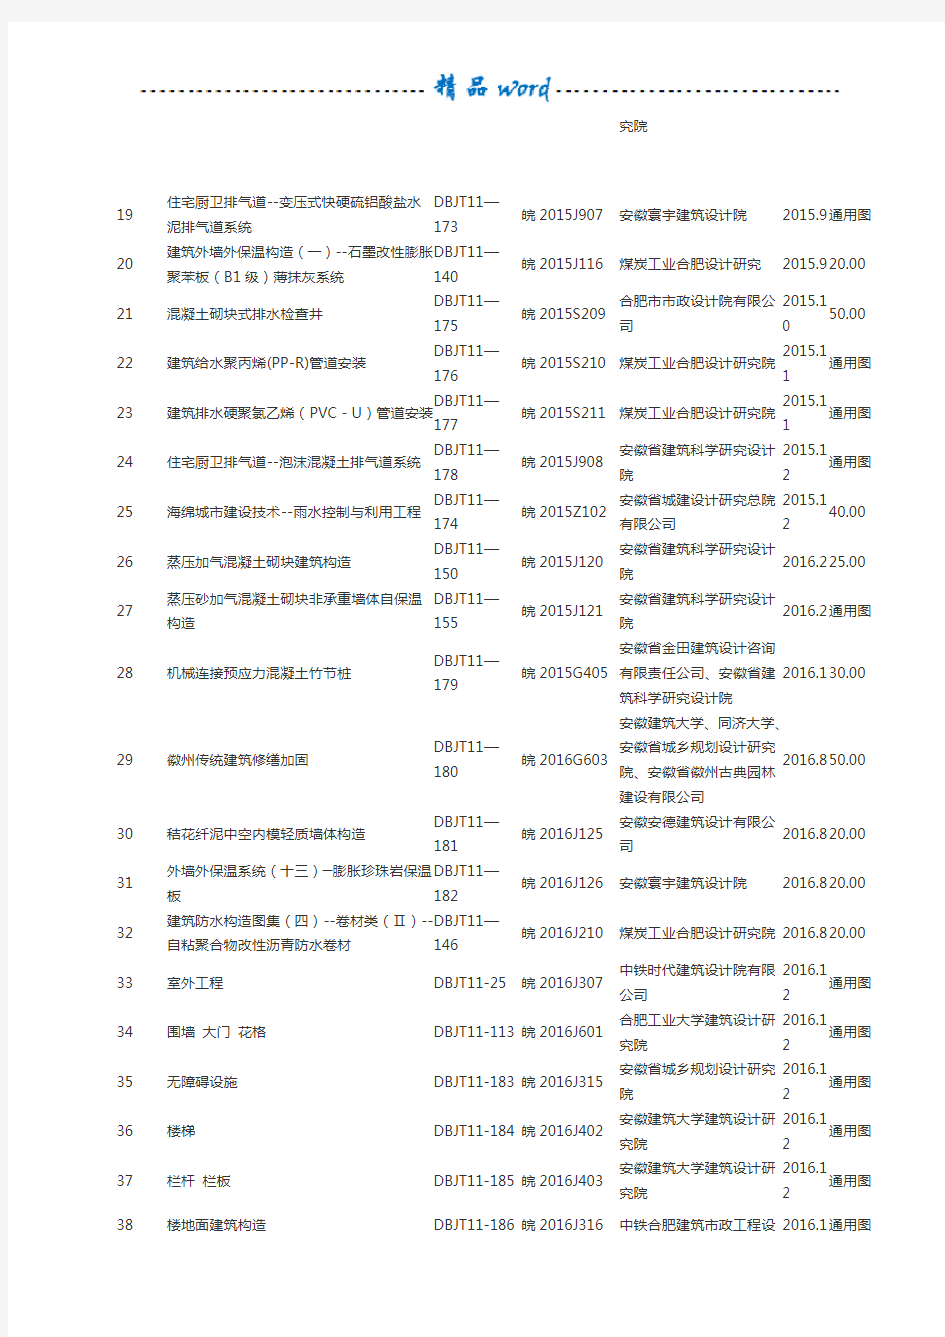 安徽省现行标准设计图集目录 (2017.1)